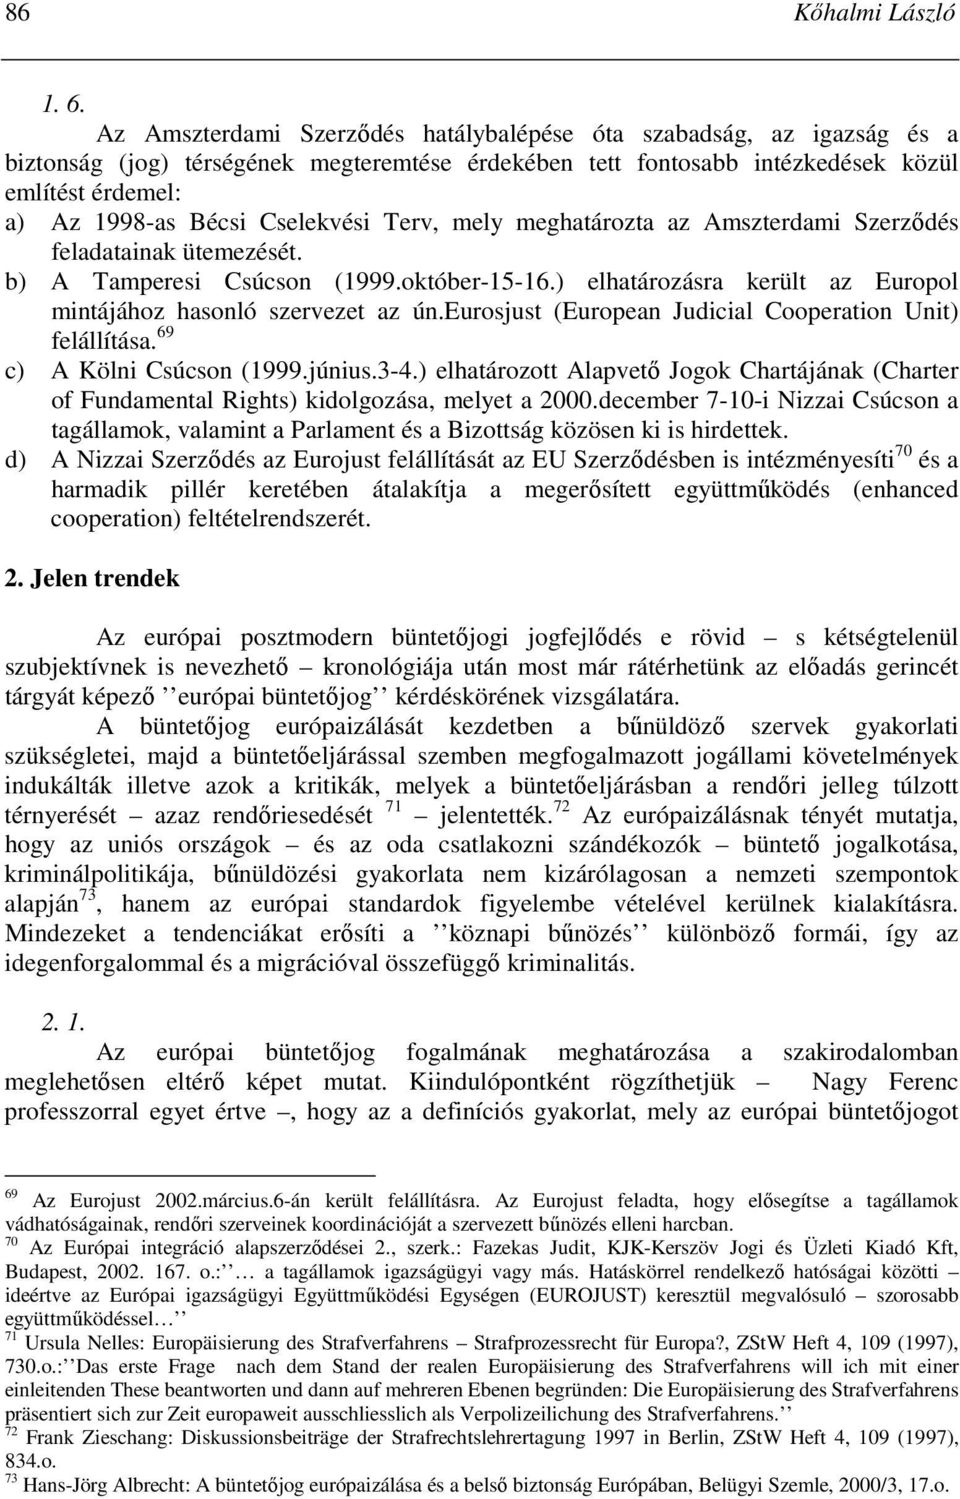 Cselekvési Terv, mely meghatározta az Amszterdami Szerzıdés feladatainak ütemezését. b) A Tamperesi Csúcson (1999.október-15-16.) elhatározásra került az Europol mintájához hasonló szervezet az ún.